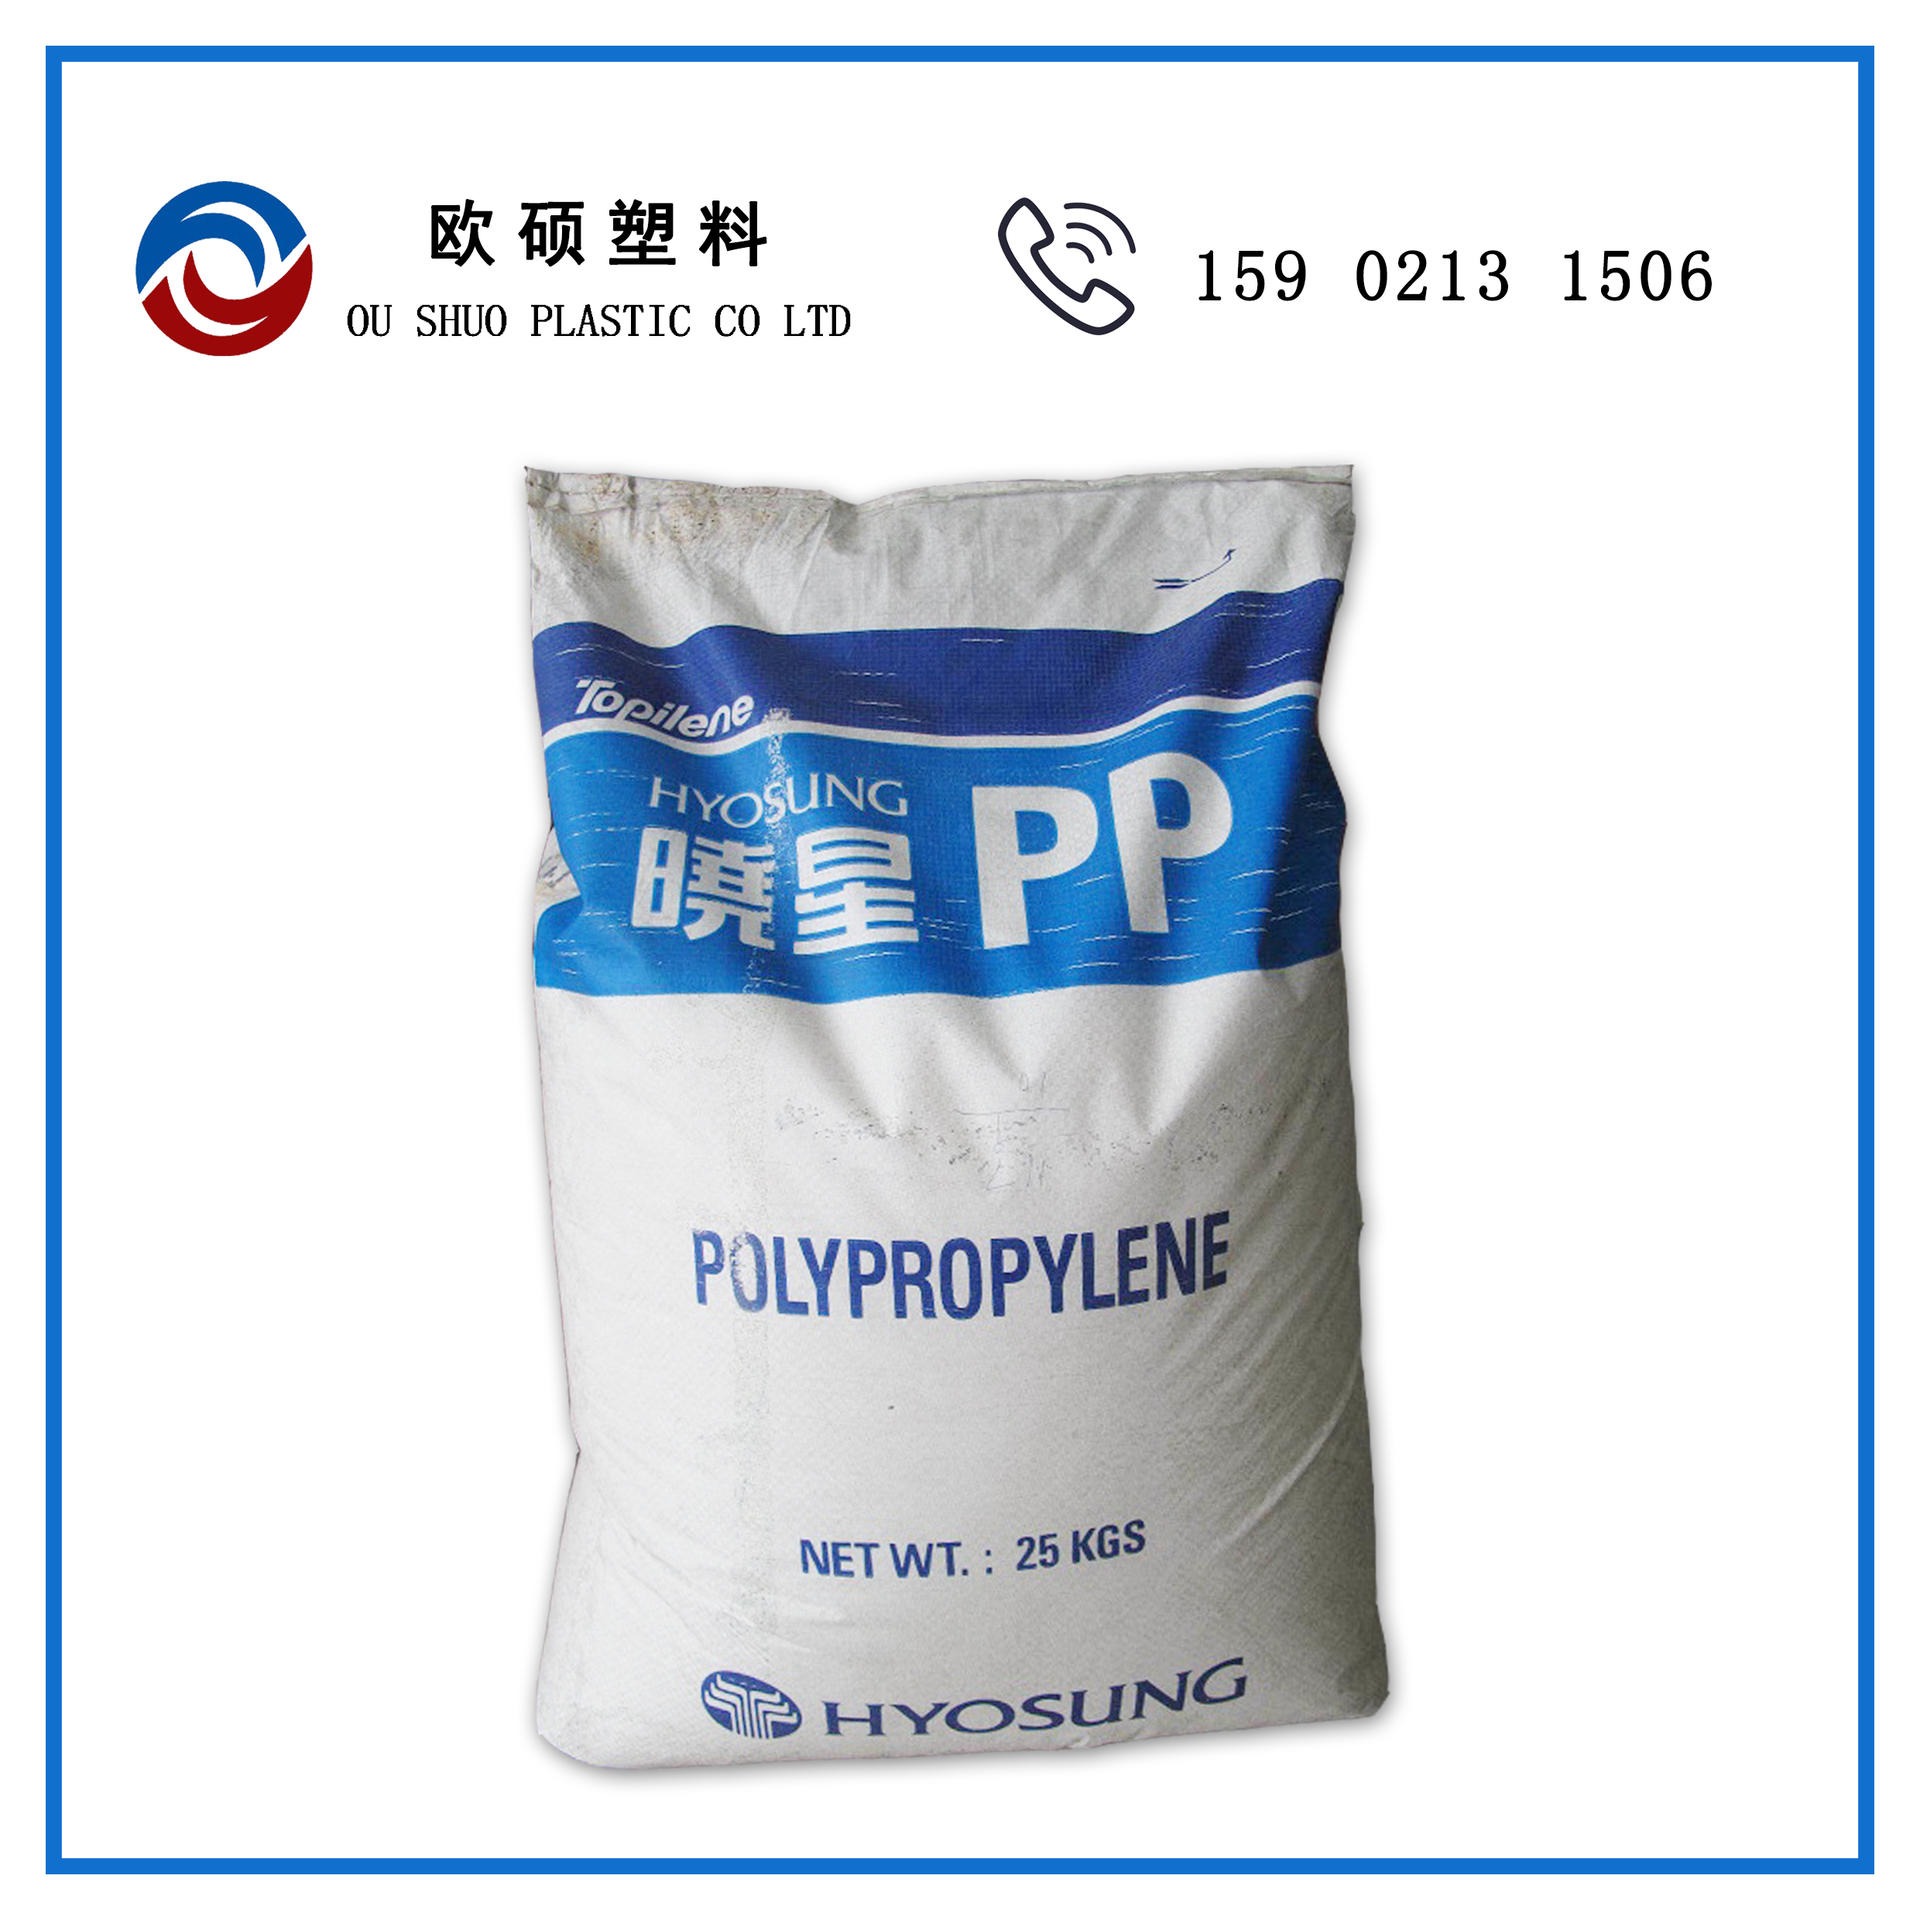 现货PP R801韩国晓星 透明级 吹塑级 管材级塑胶原料